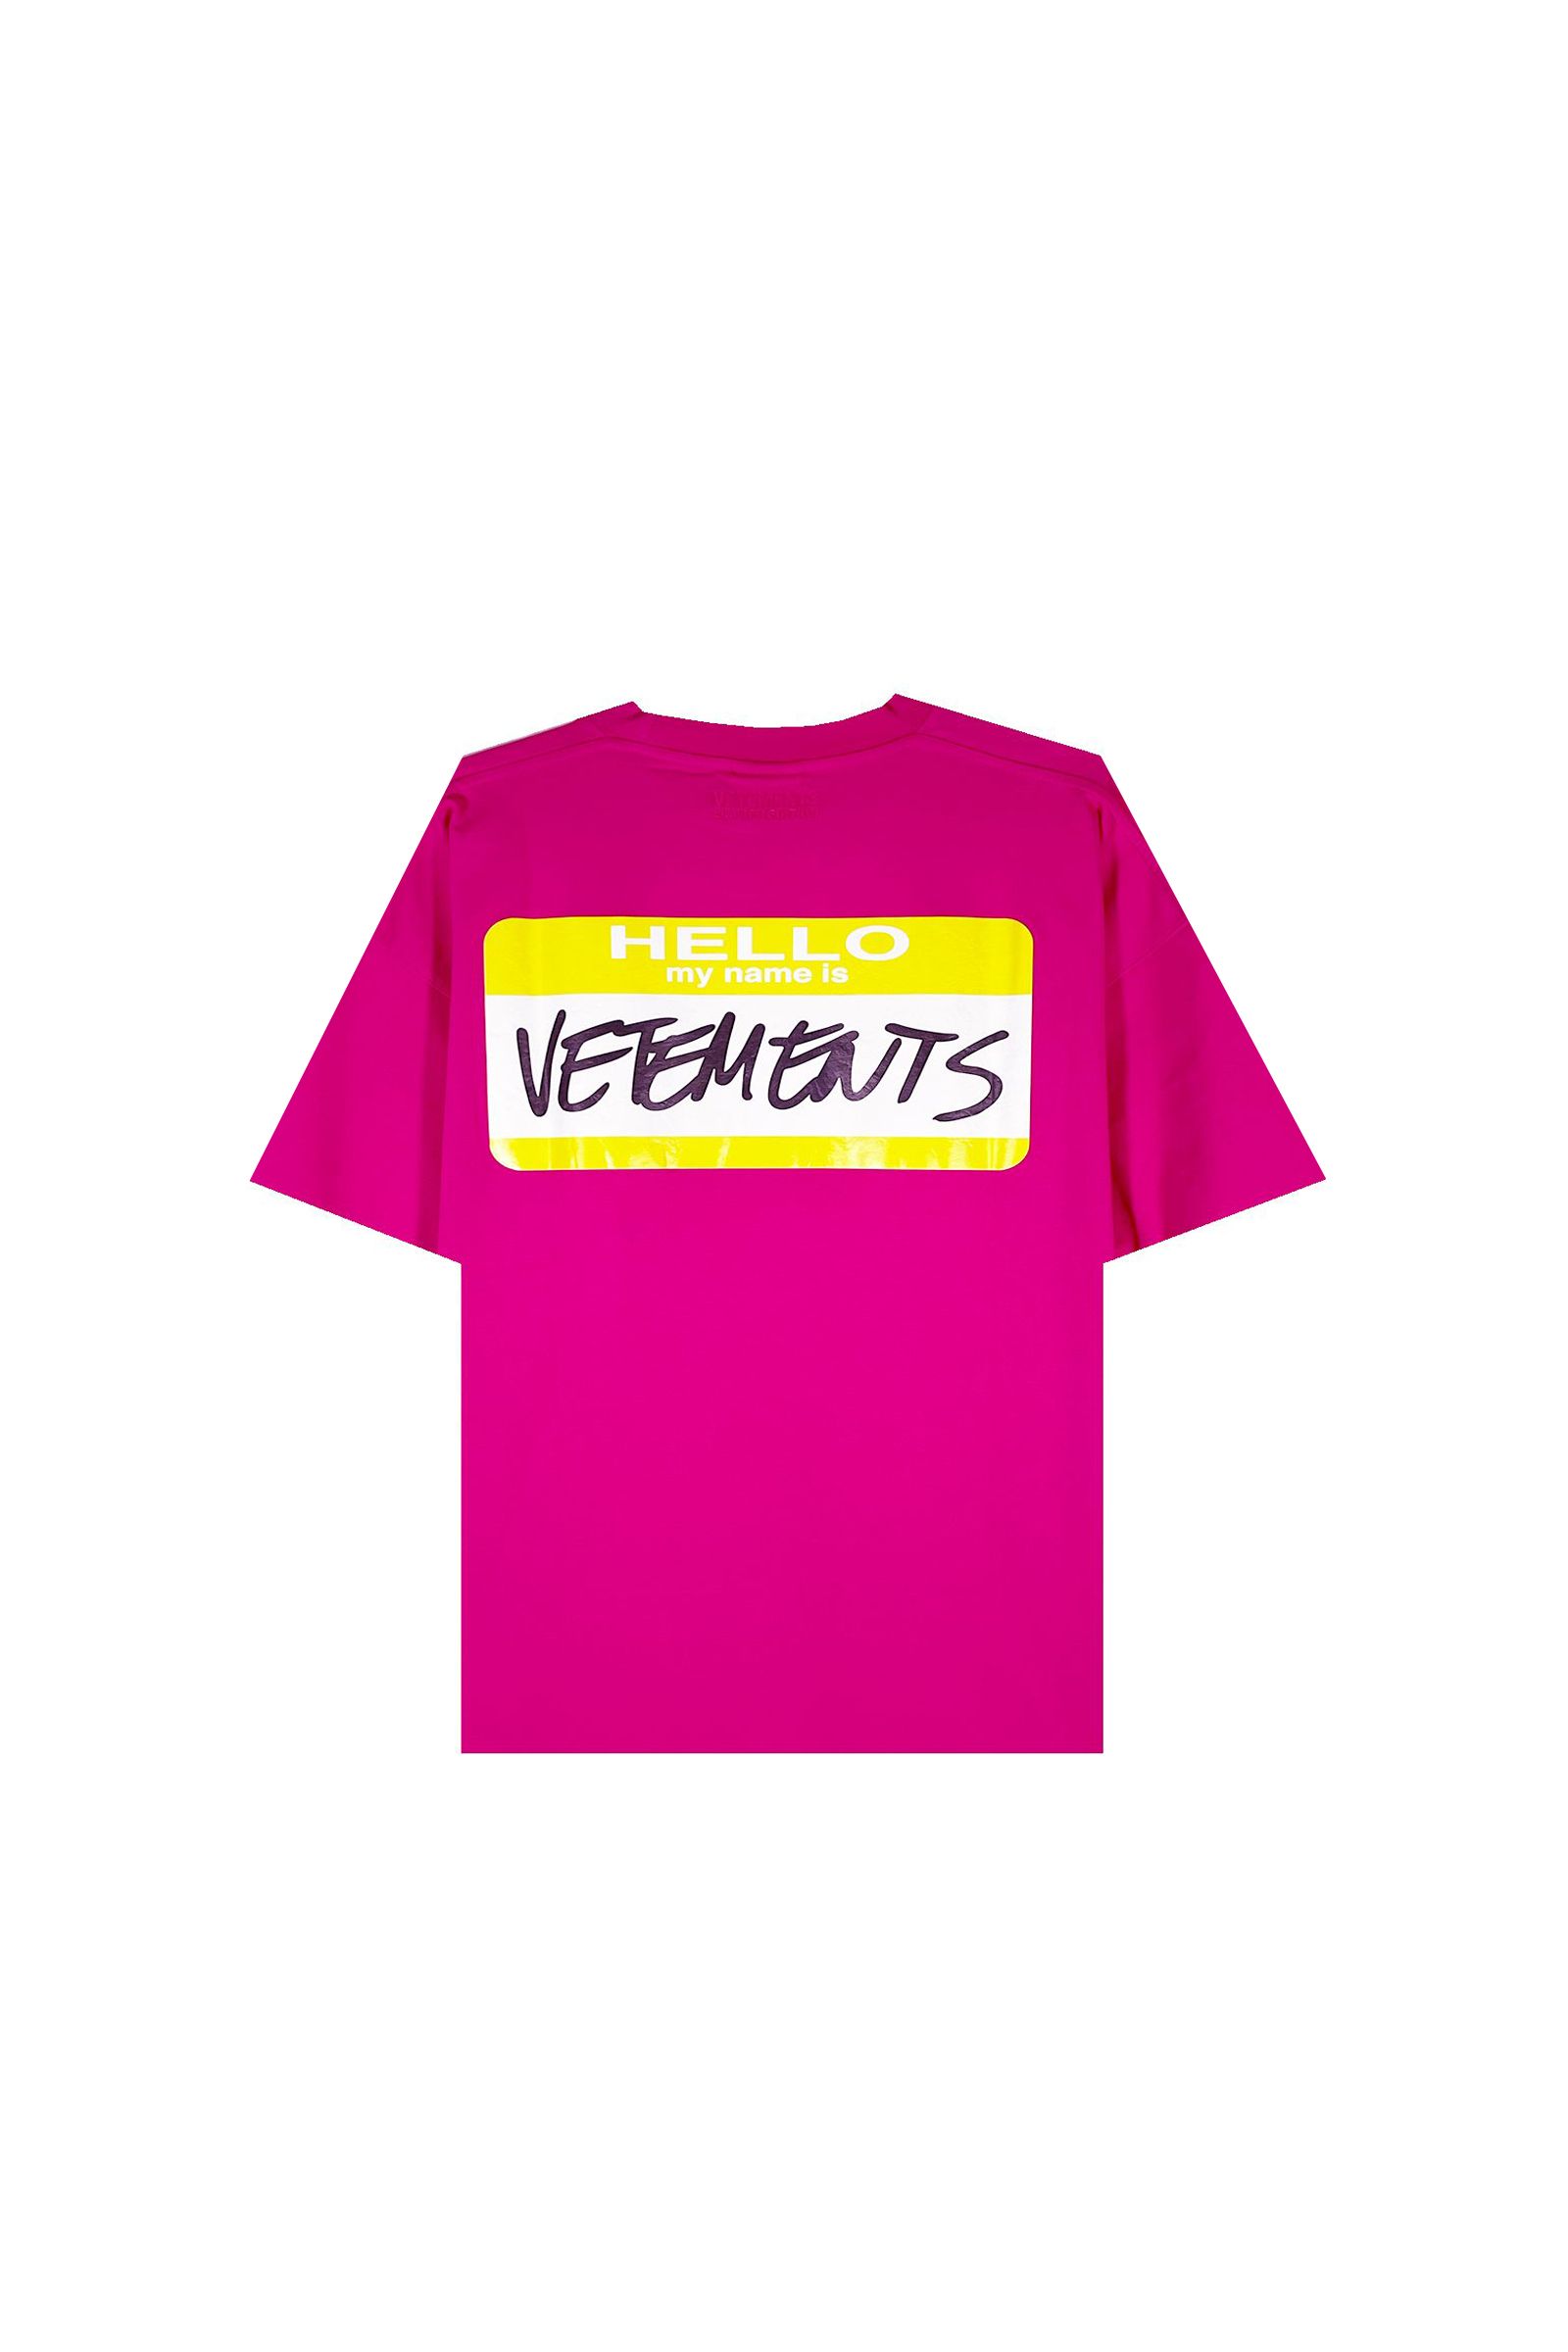 VETEMENTS - Only vetements T-shirt | Detail